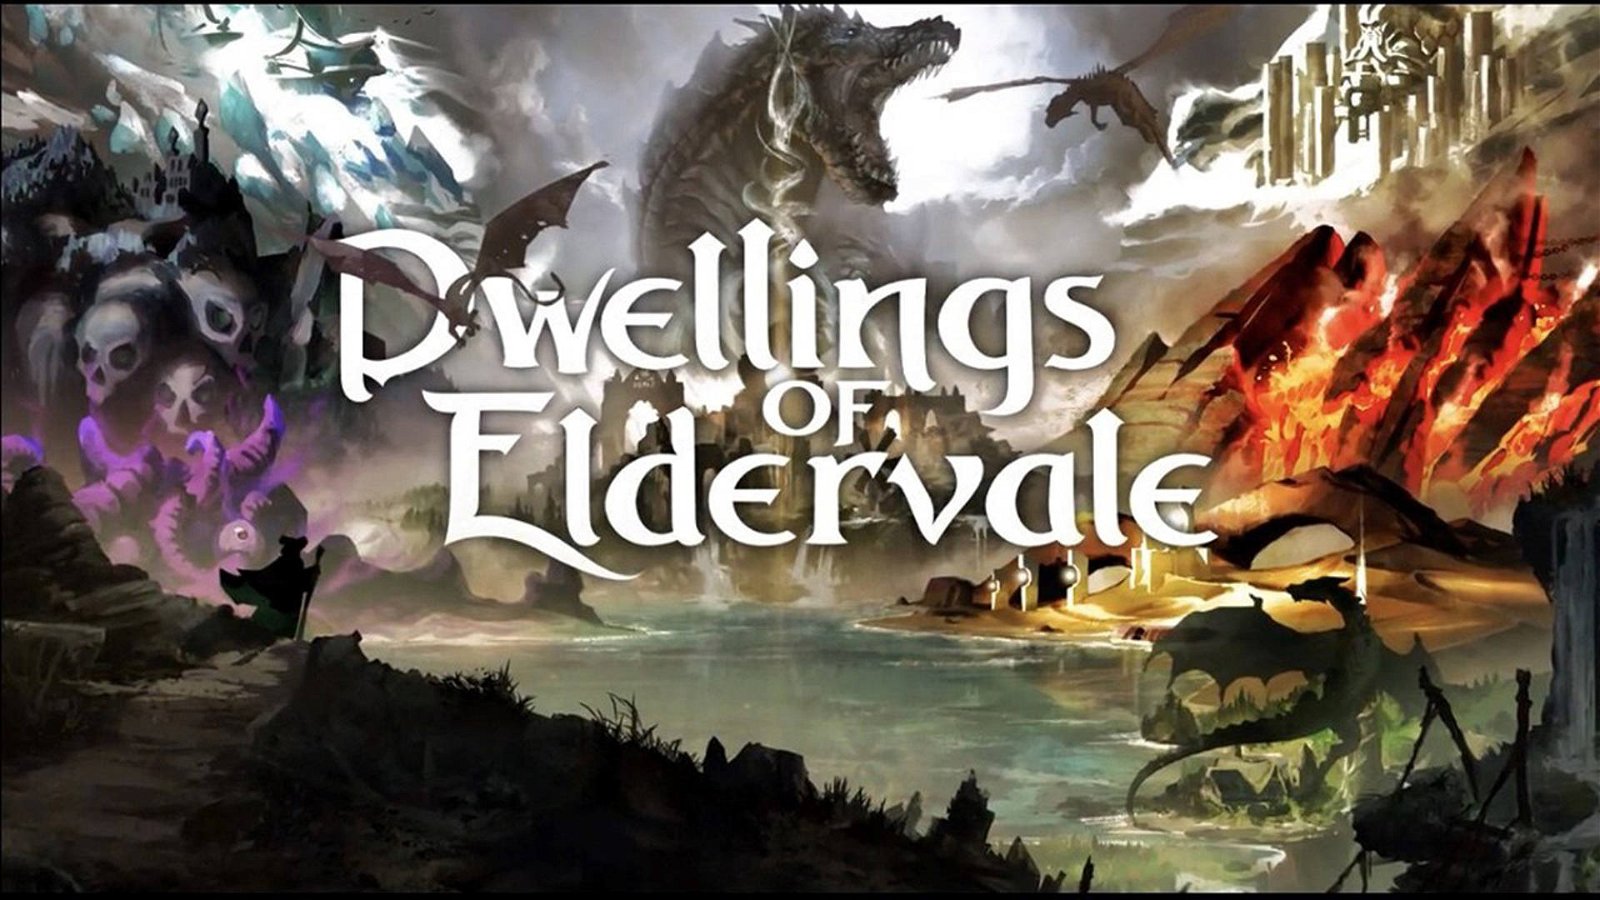 Immagine di Dwellings of Eldervale, una campagna Kickstarter per controllare gli Elementi